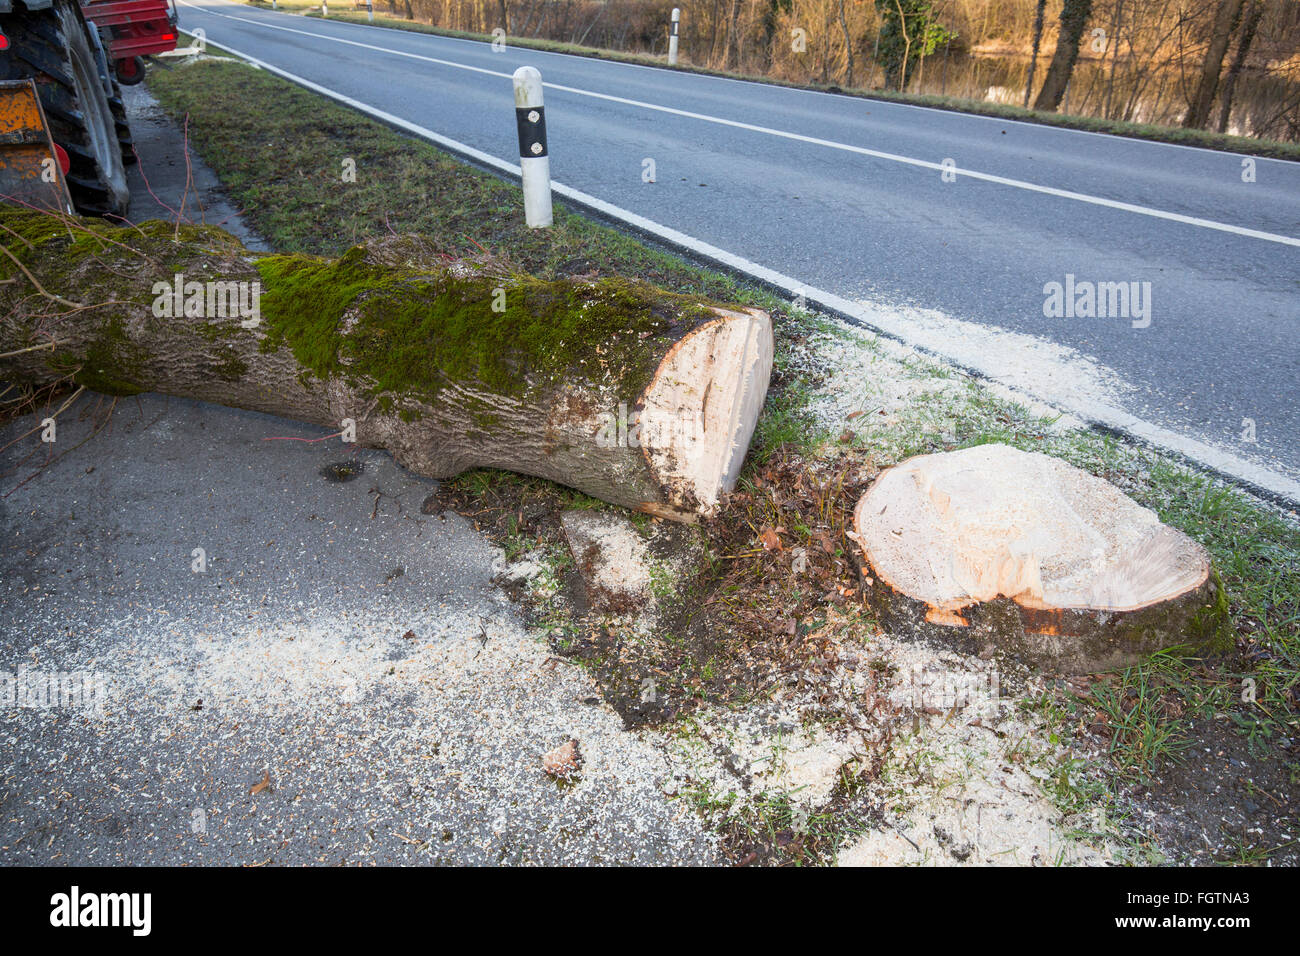 La coupe d'un arbre, d'un abattage le long d'une route, Baum, saurait Baumstamm, tronc d'arbre Banque D'Images